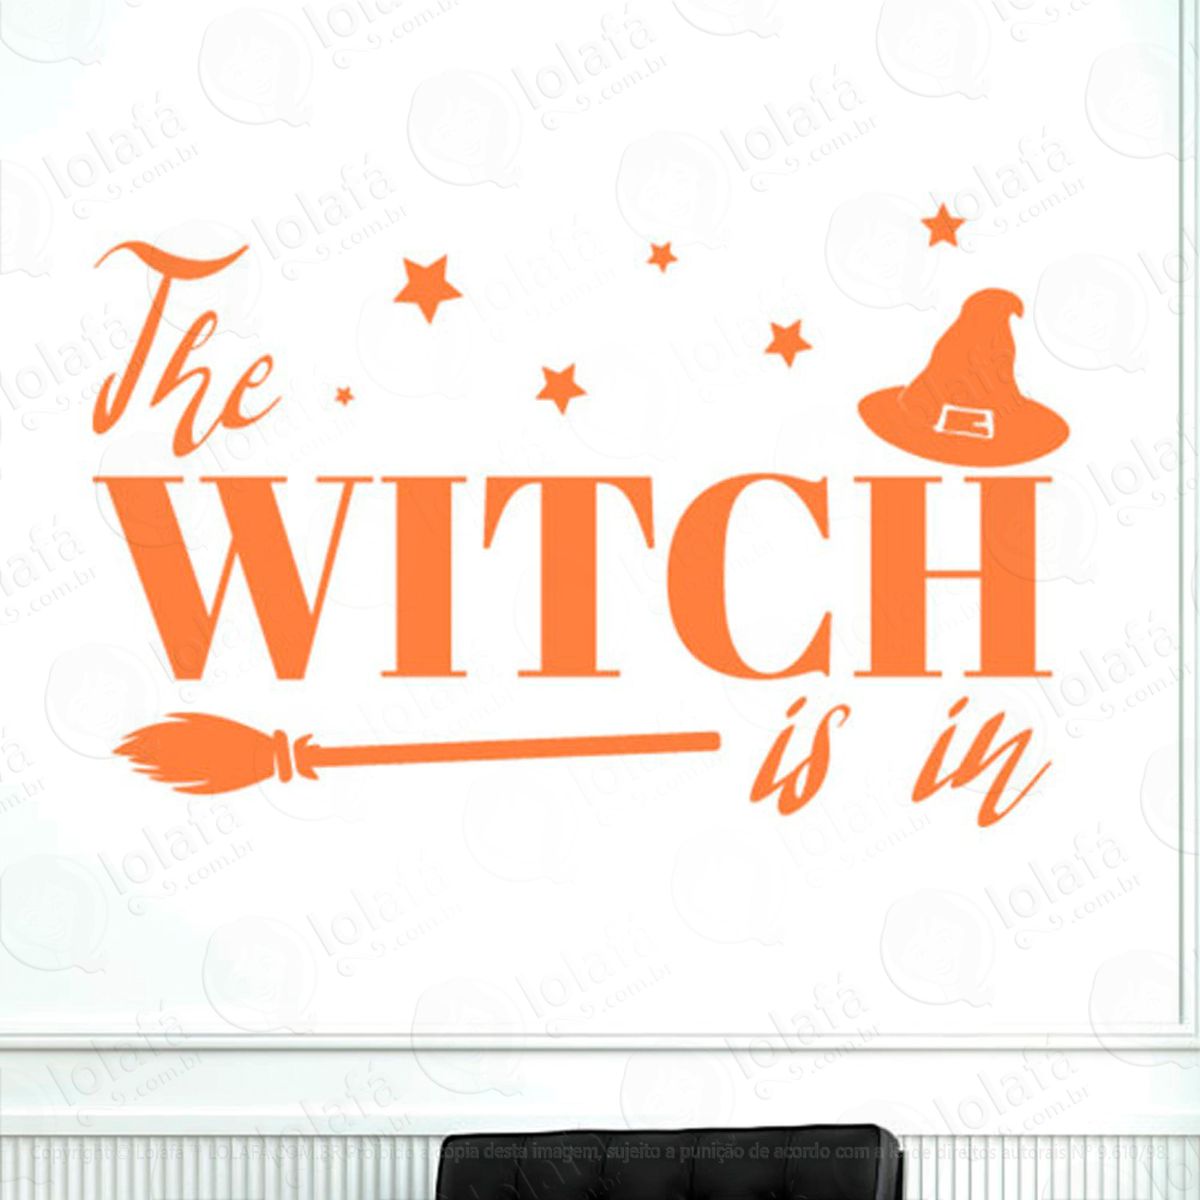 frase a bruxa está na vassoura adesivo de parede decorativo para casa, sala, quarto e vidro - mod:104